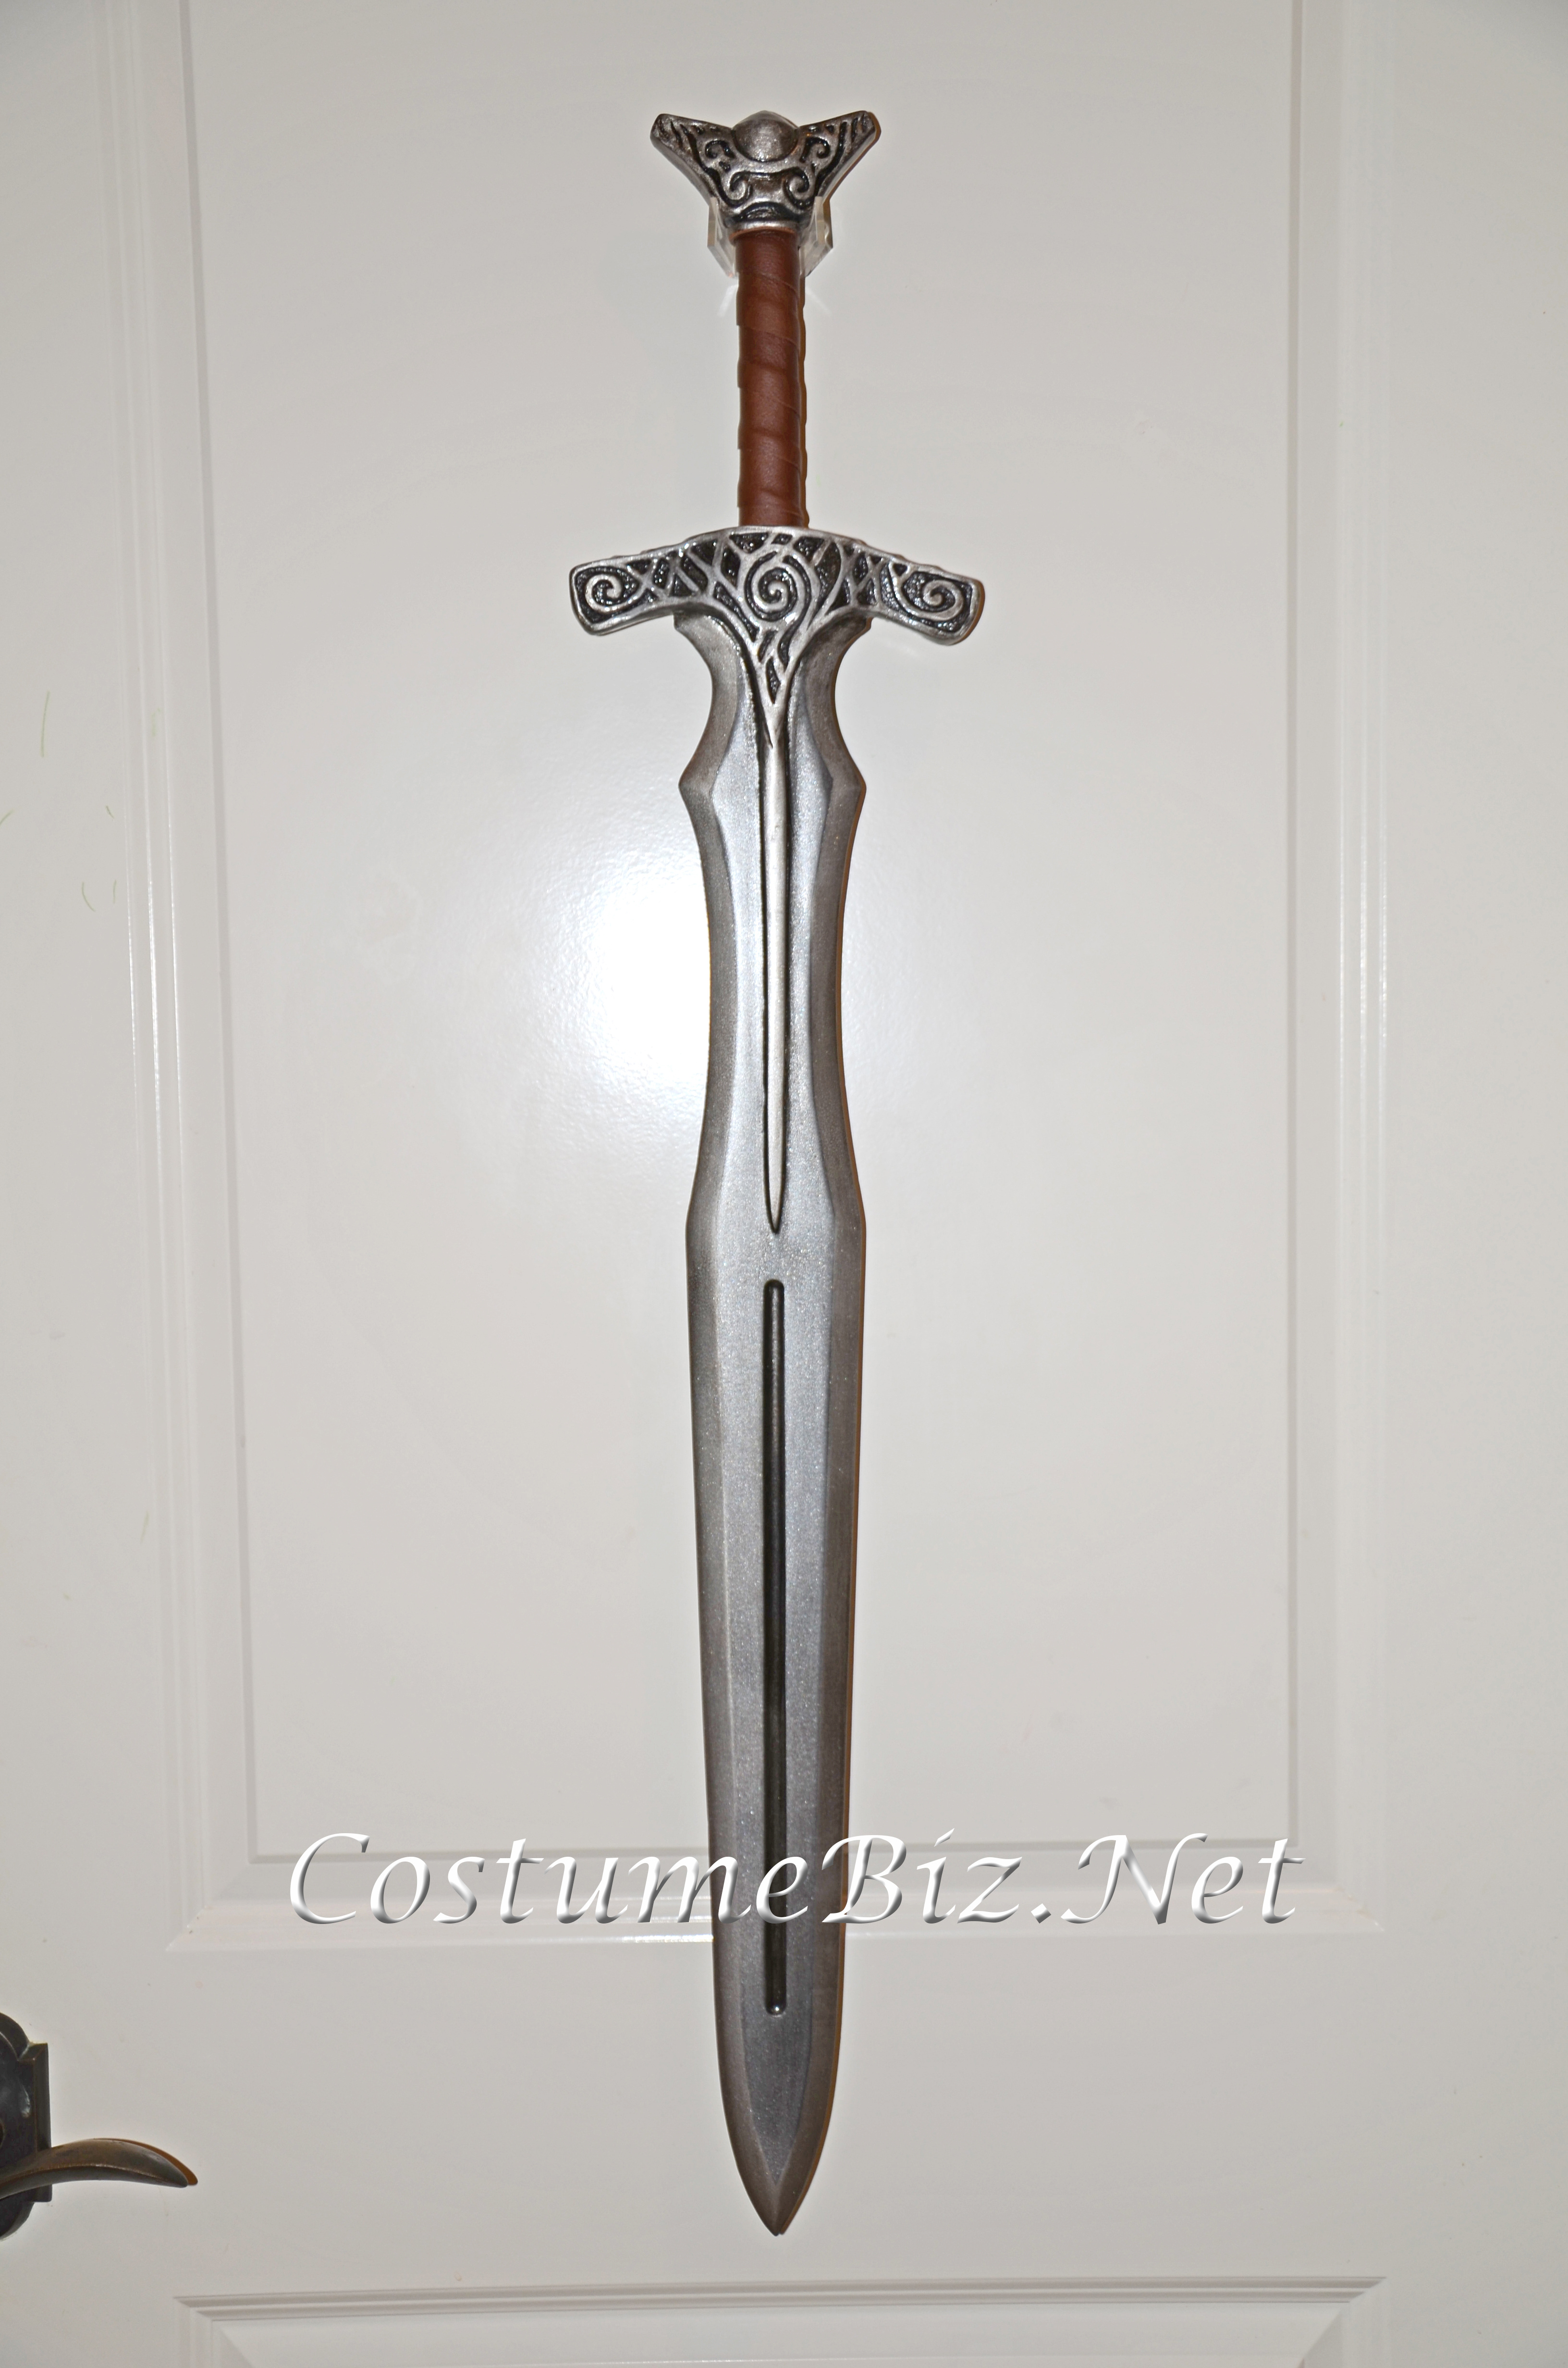 Skyrim Steel Sword prop